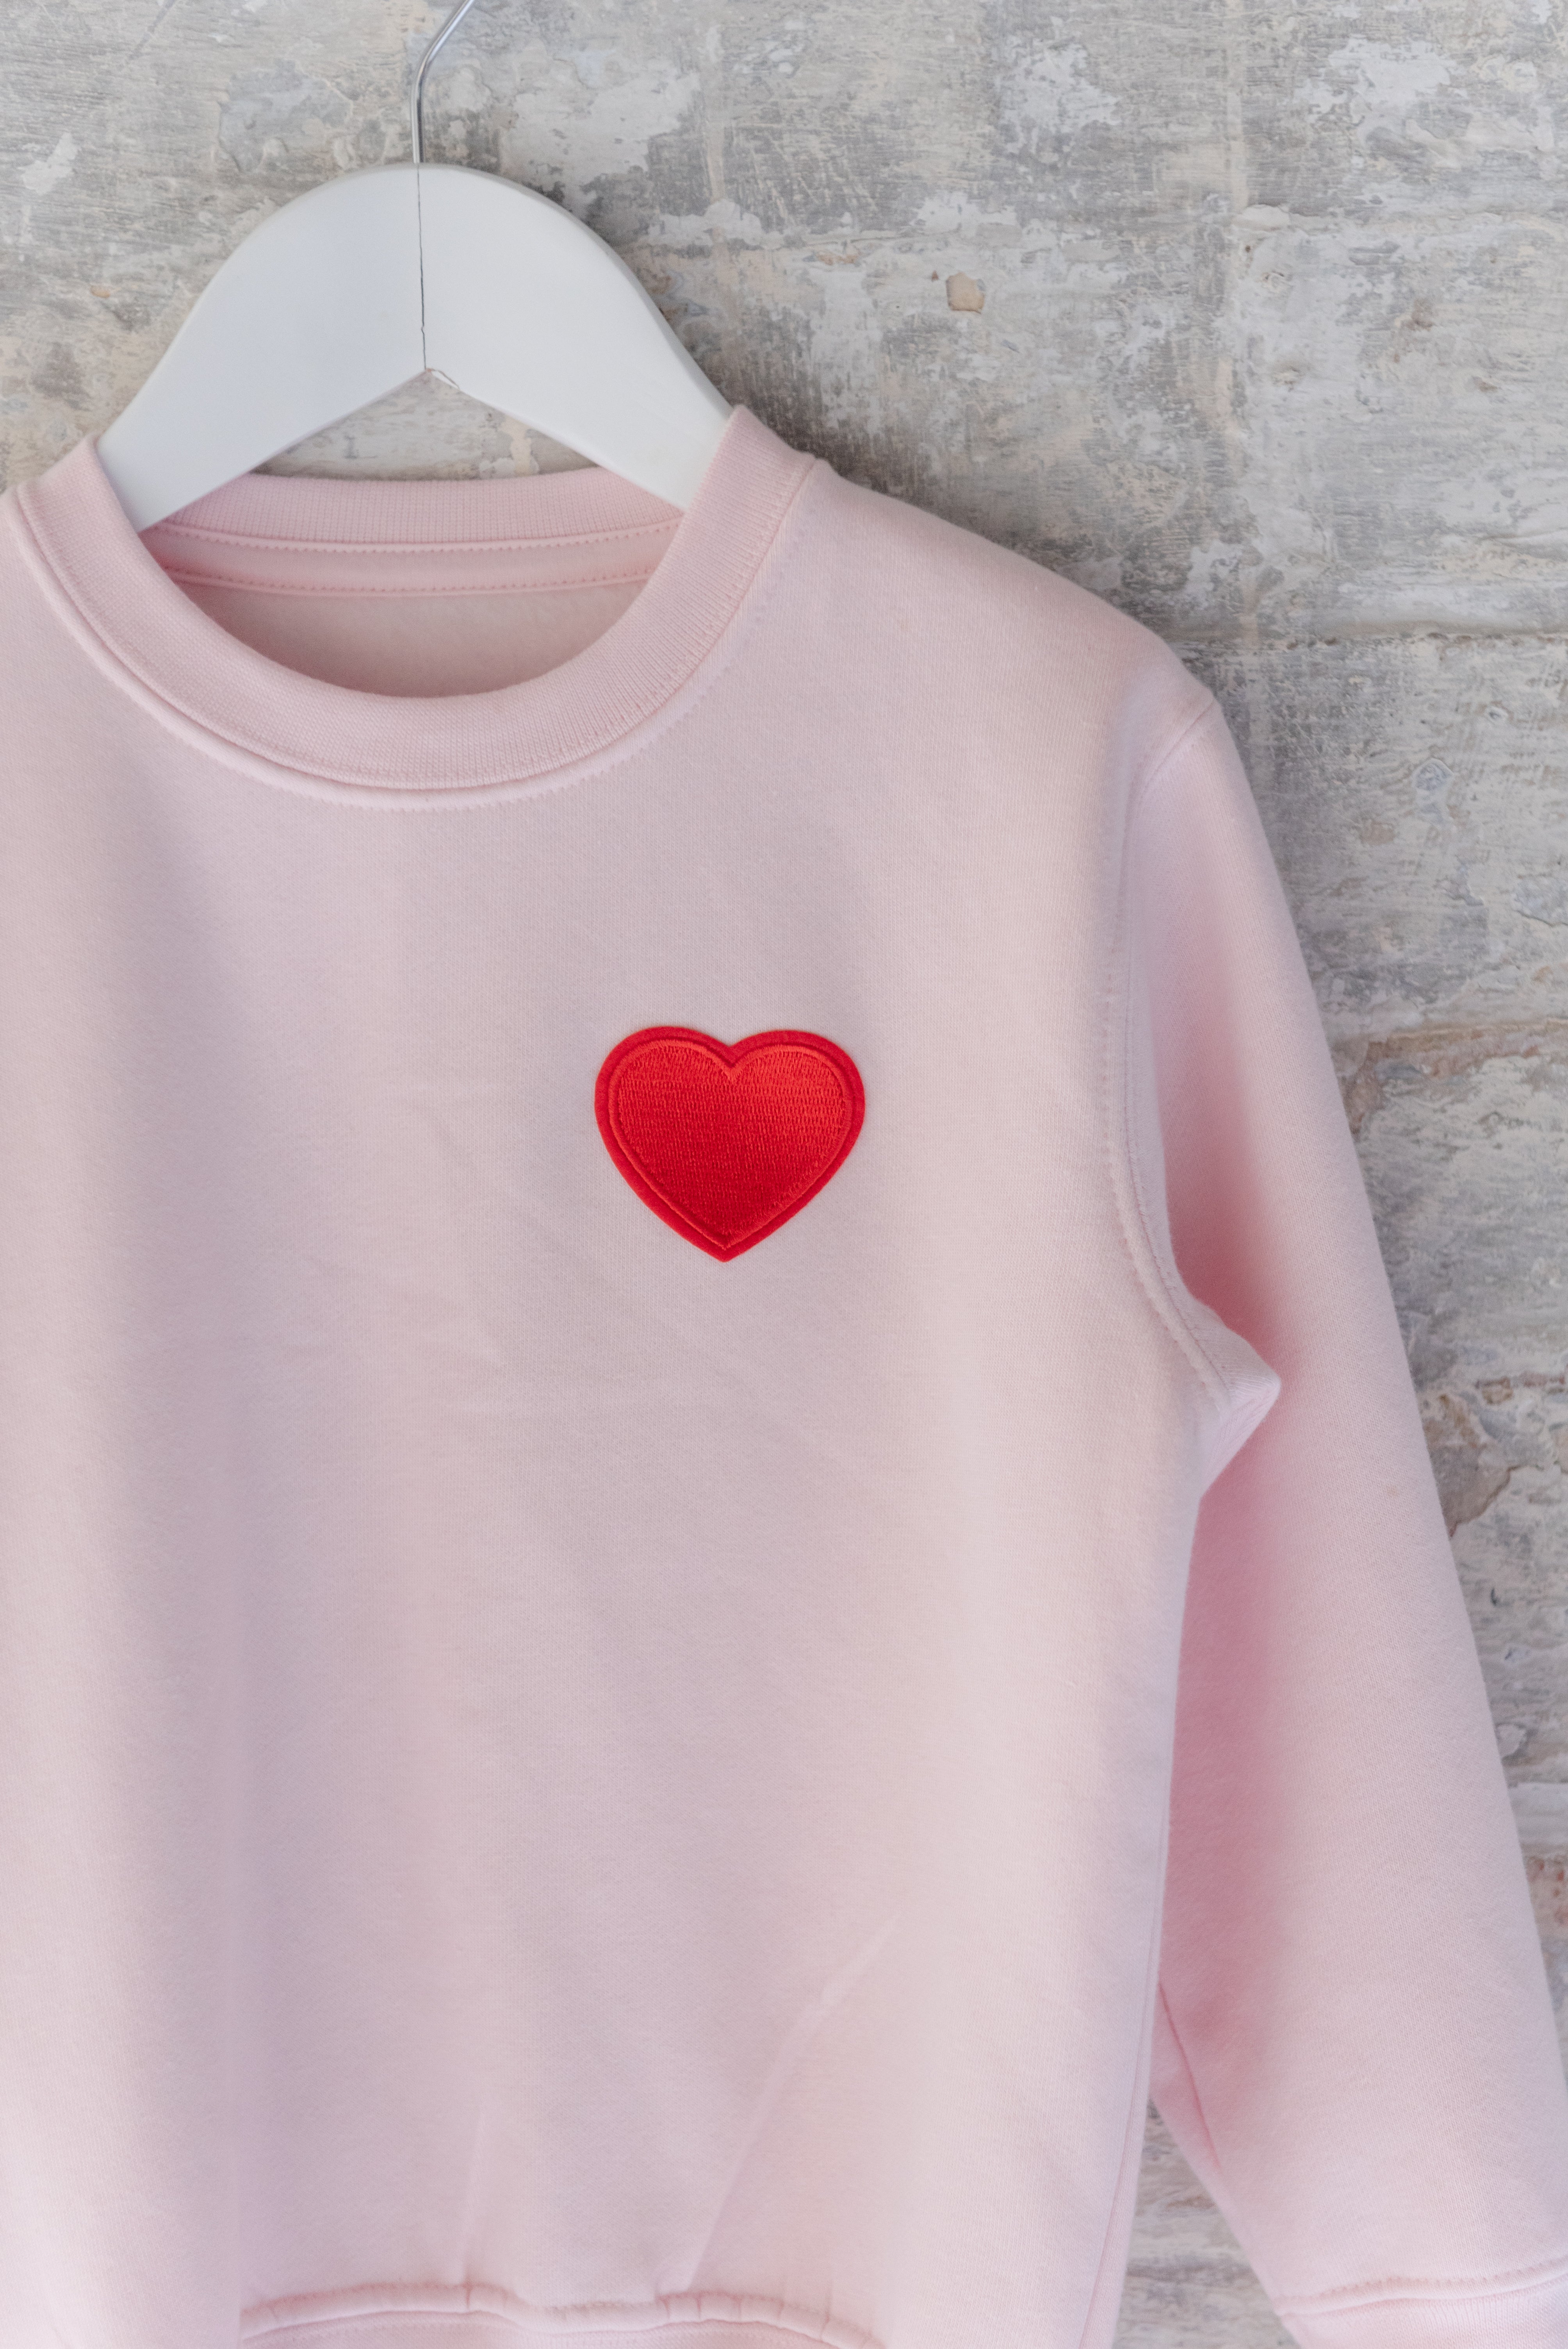 Pink Heart Children's Sweatshirt